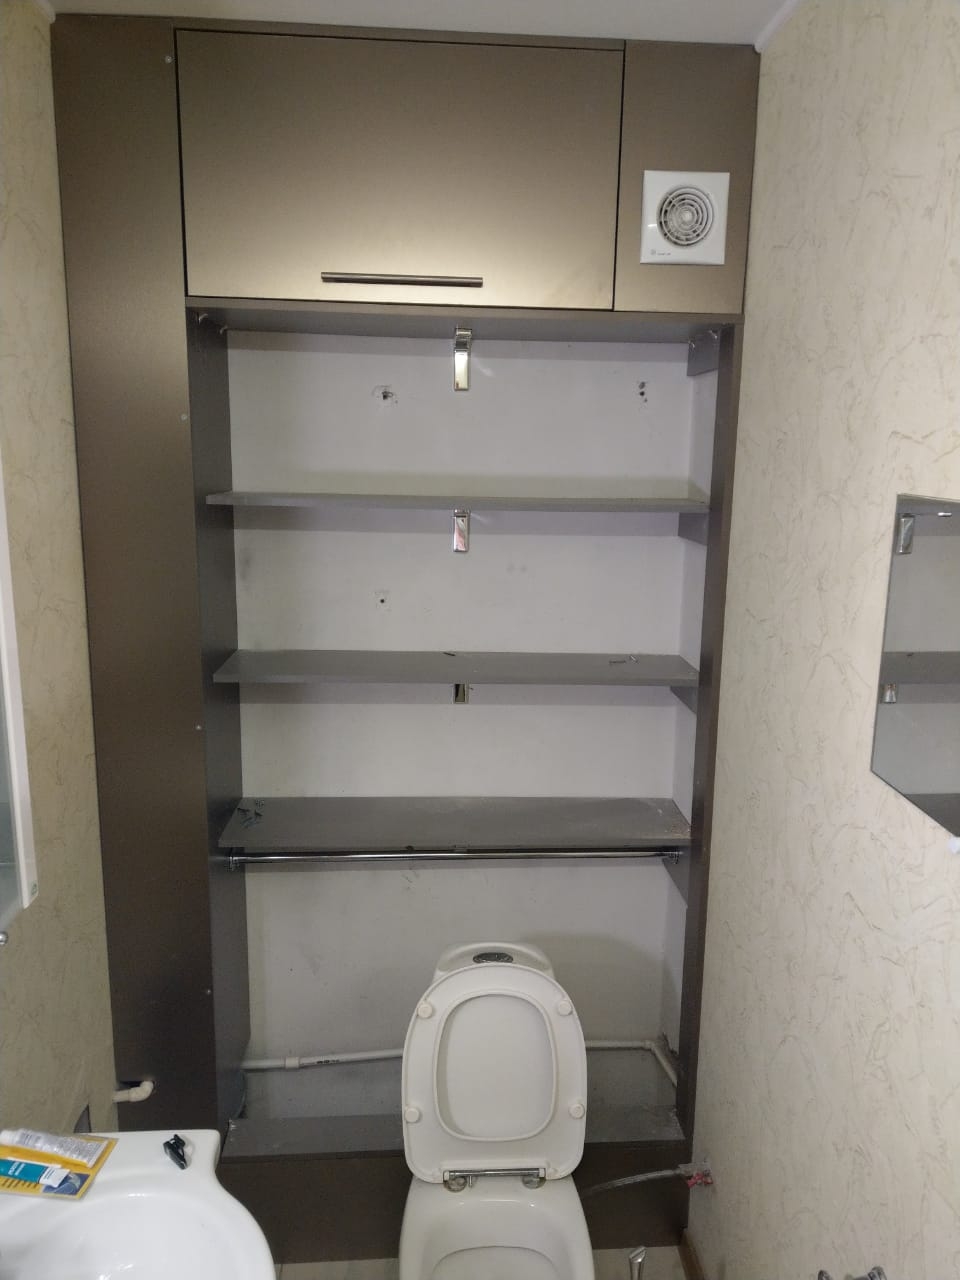 Встроенный шкаф в туалет 1